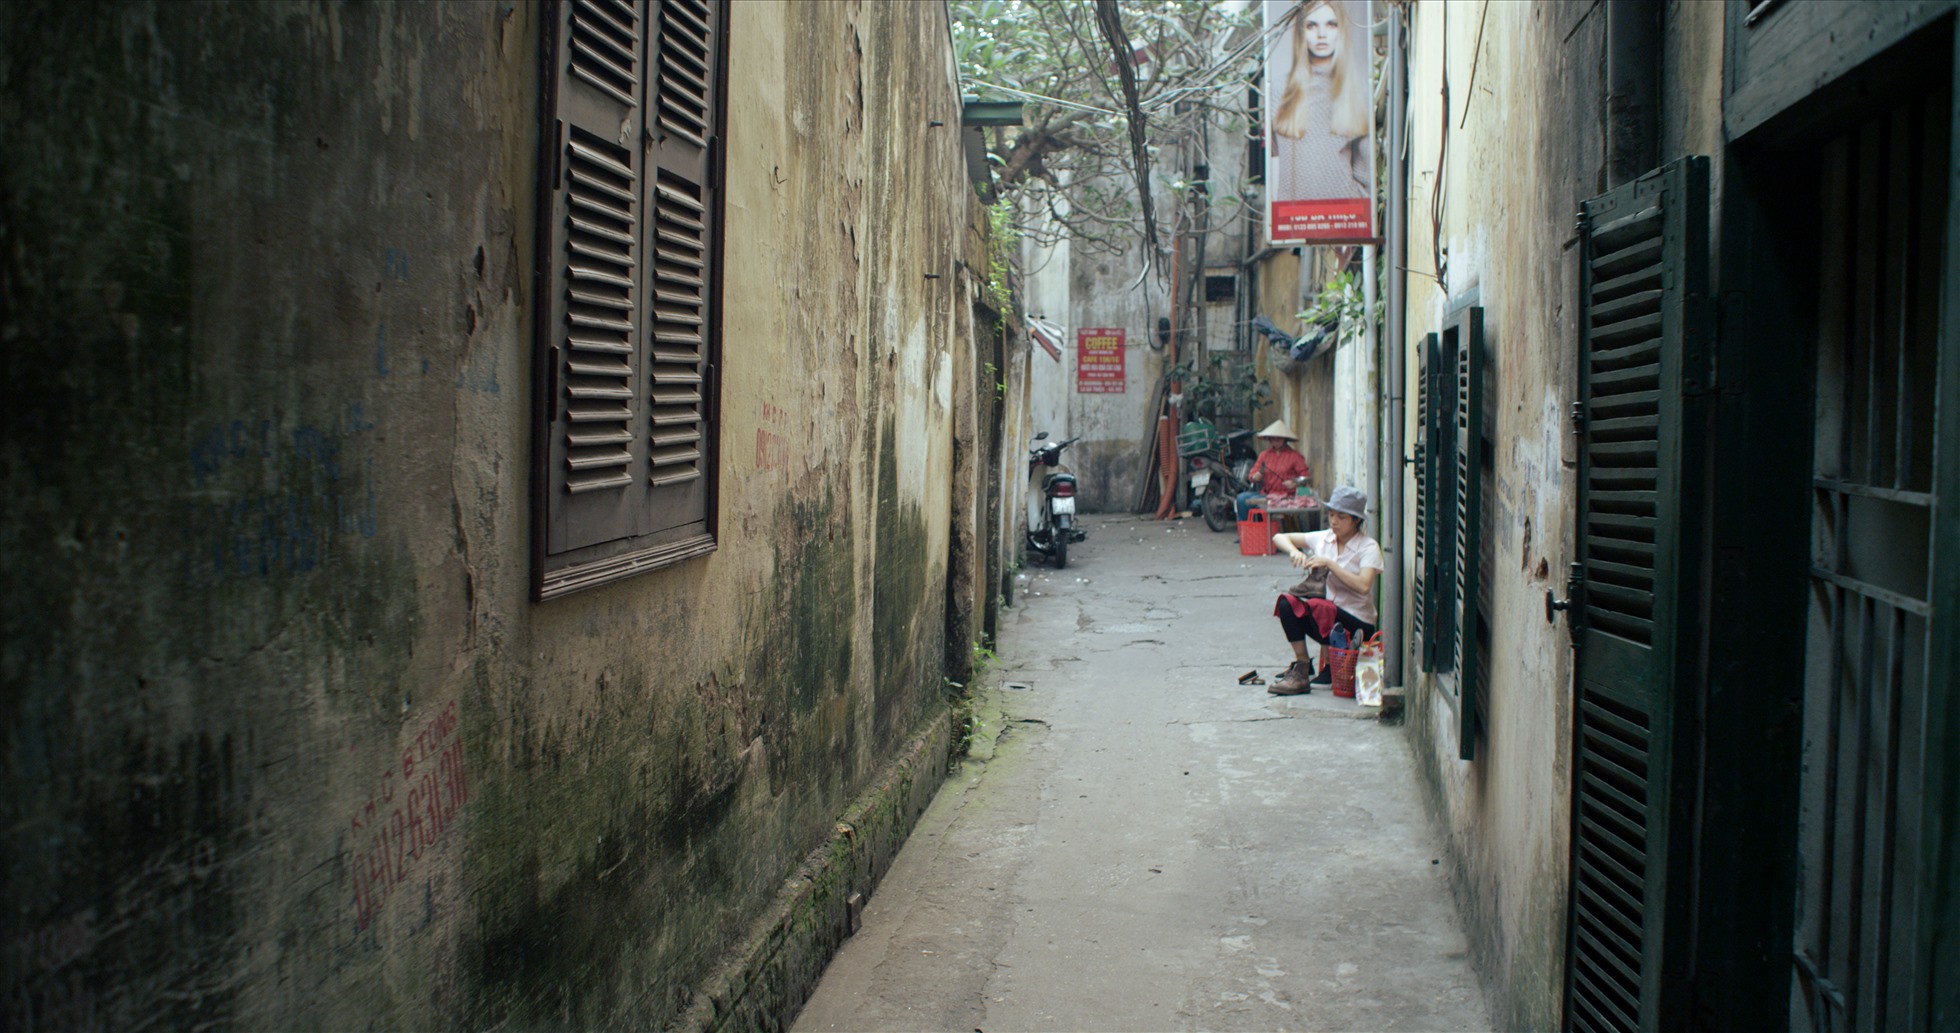 “Hòa nhài” tái hiện những lát cắt đời sống ở Hà Nội, gửi gắm tình yêu Hà Nội của đạo diễn - NSND Đặng Nhật Minh. Ảnh: NSX